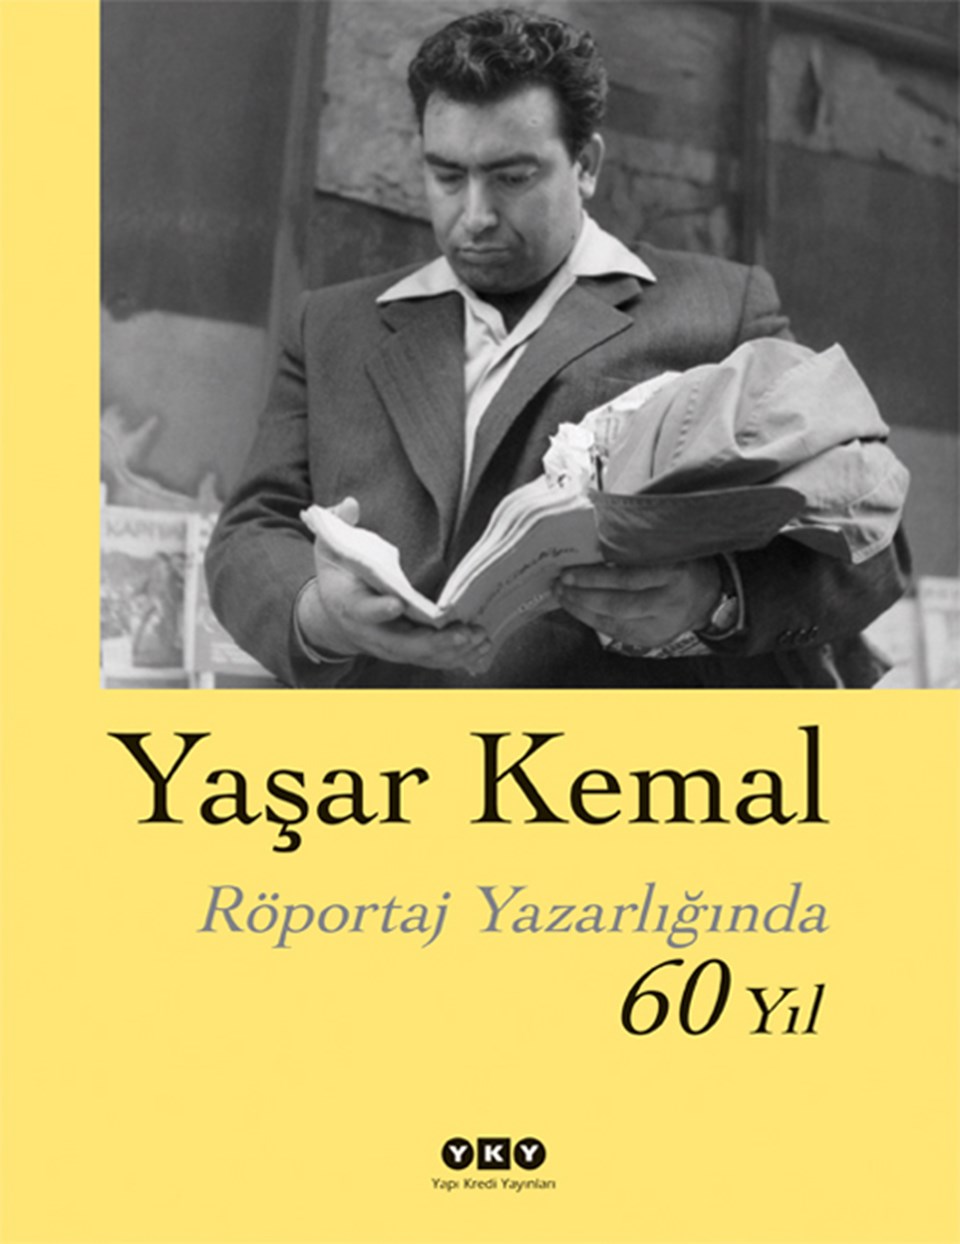 Yaşar Kemal’in röportajları 60 yaşında  - 1